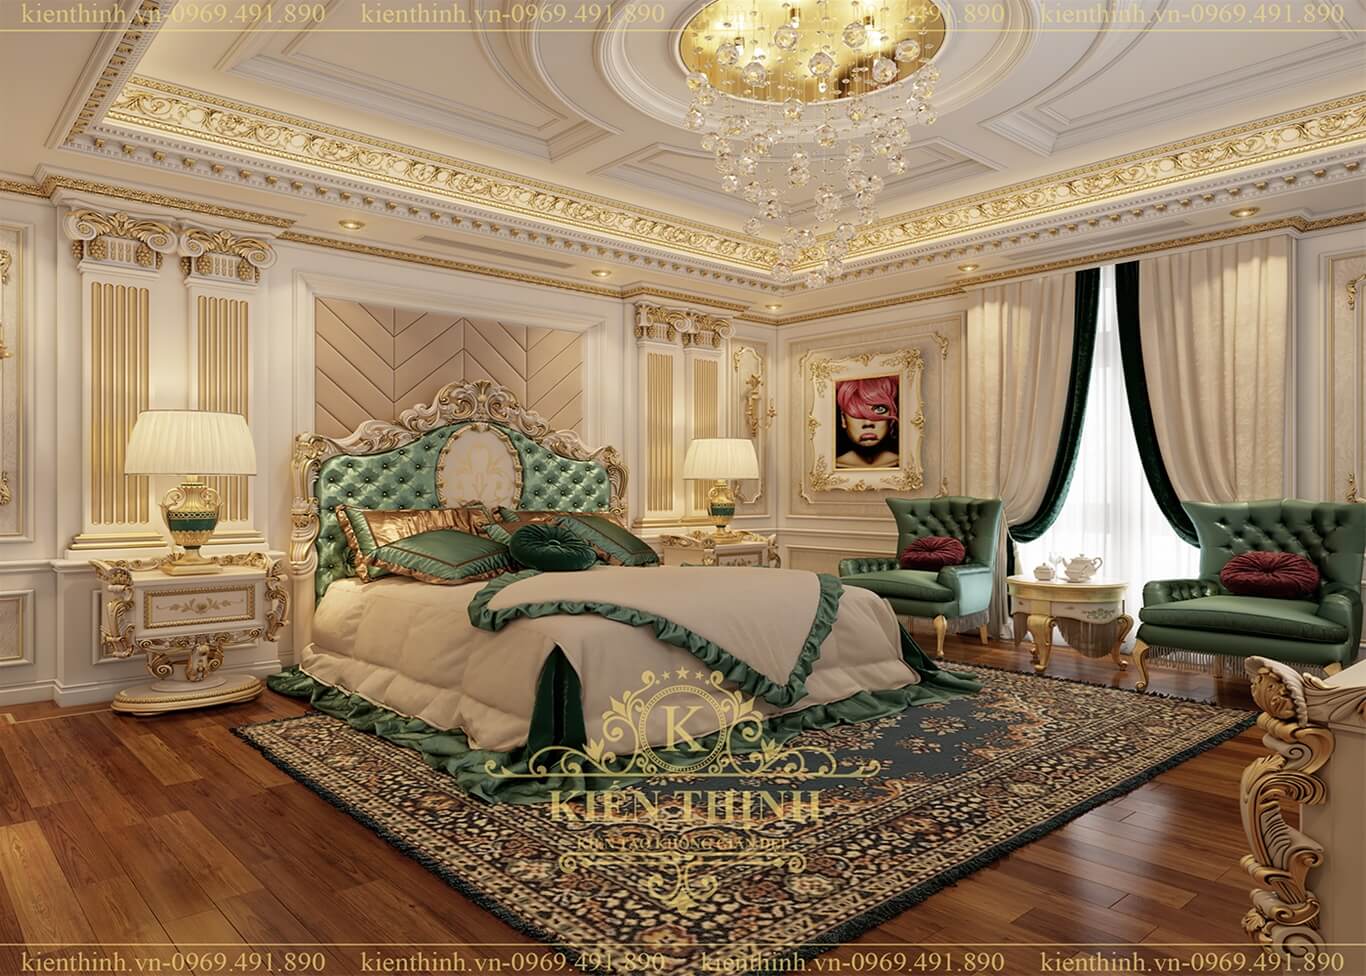 thiết kế nội thất phòng ngủ biệt thự lâu đài phong cách cổ điển châu Âu sang trọng ở Đồng Nai 03